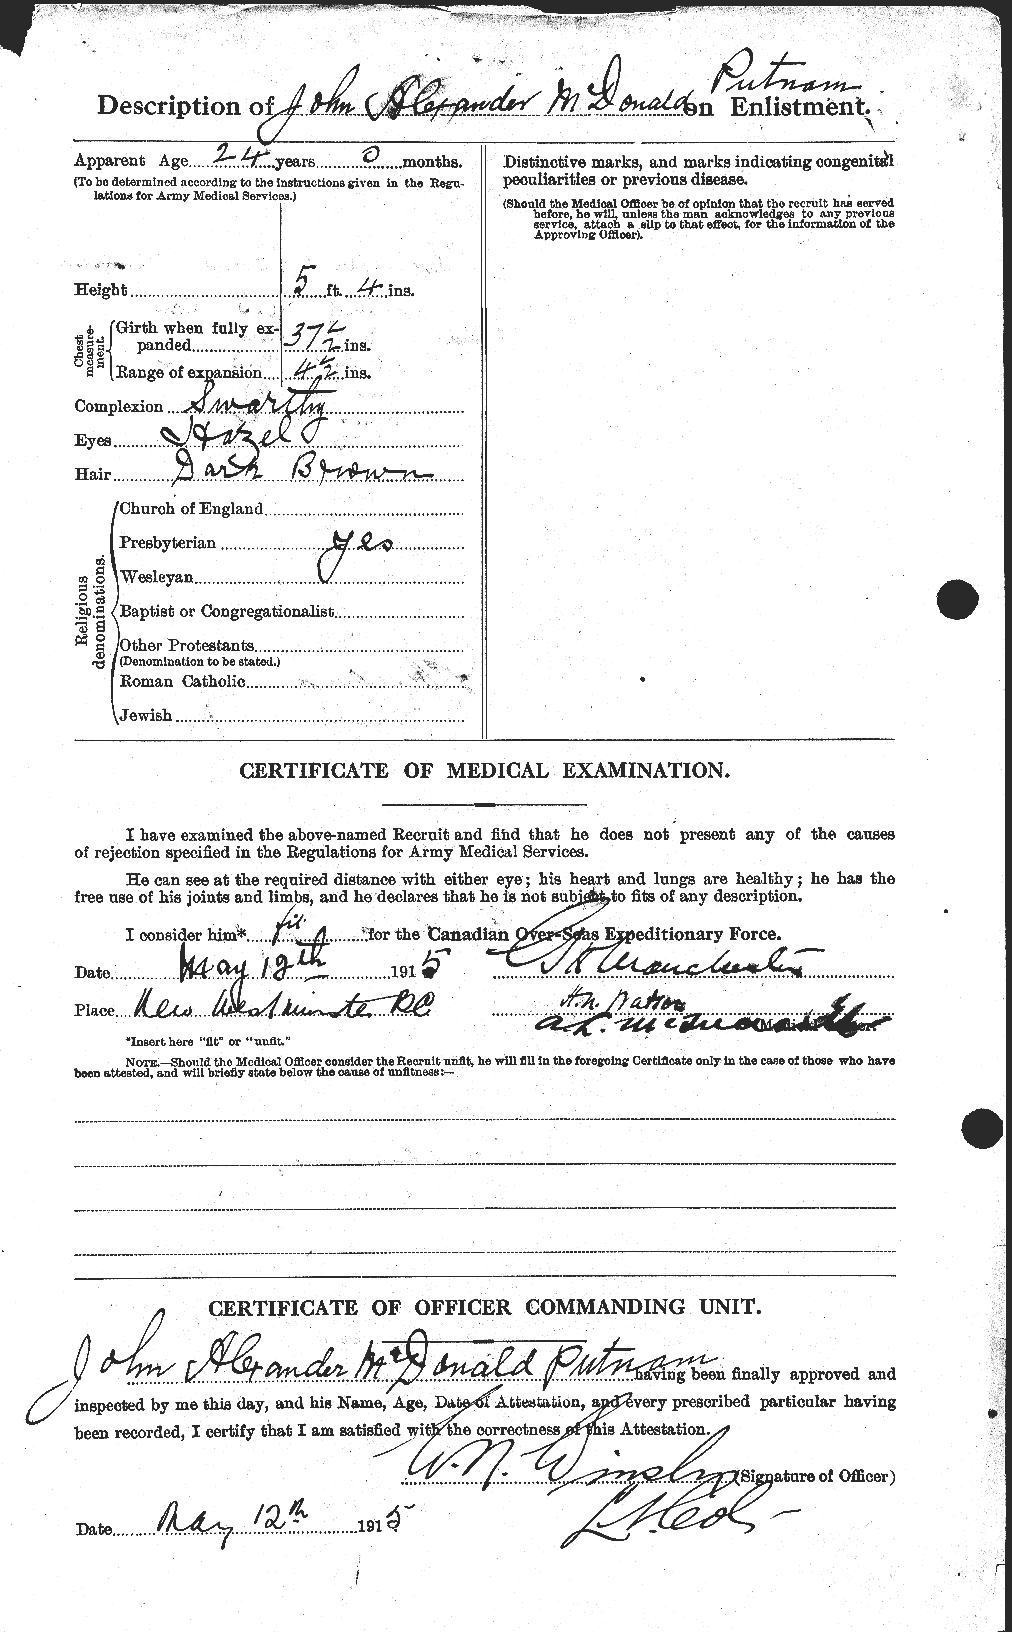 Dossiers du Personnel de la Première Guerre mondiale - CEC 591730b